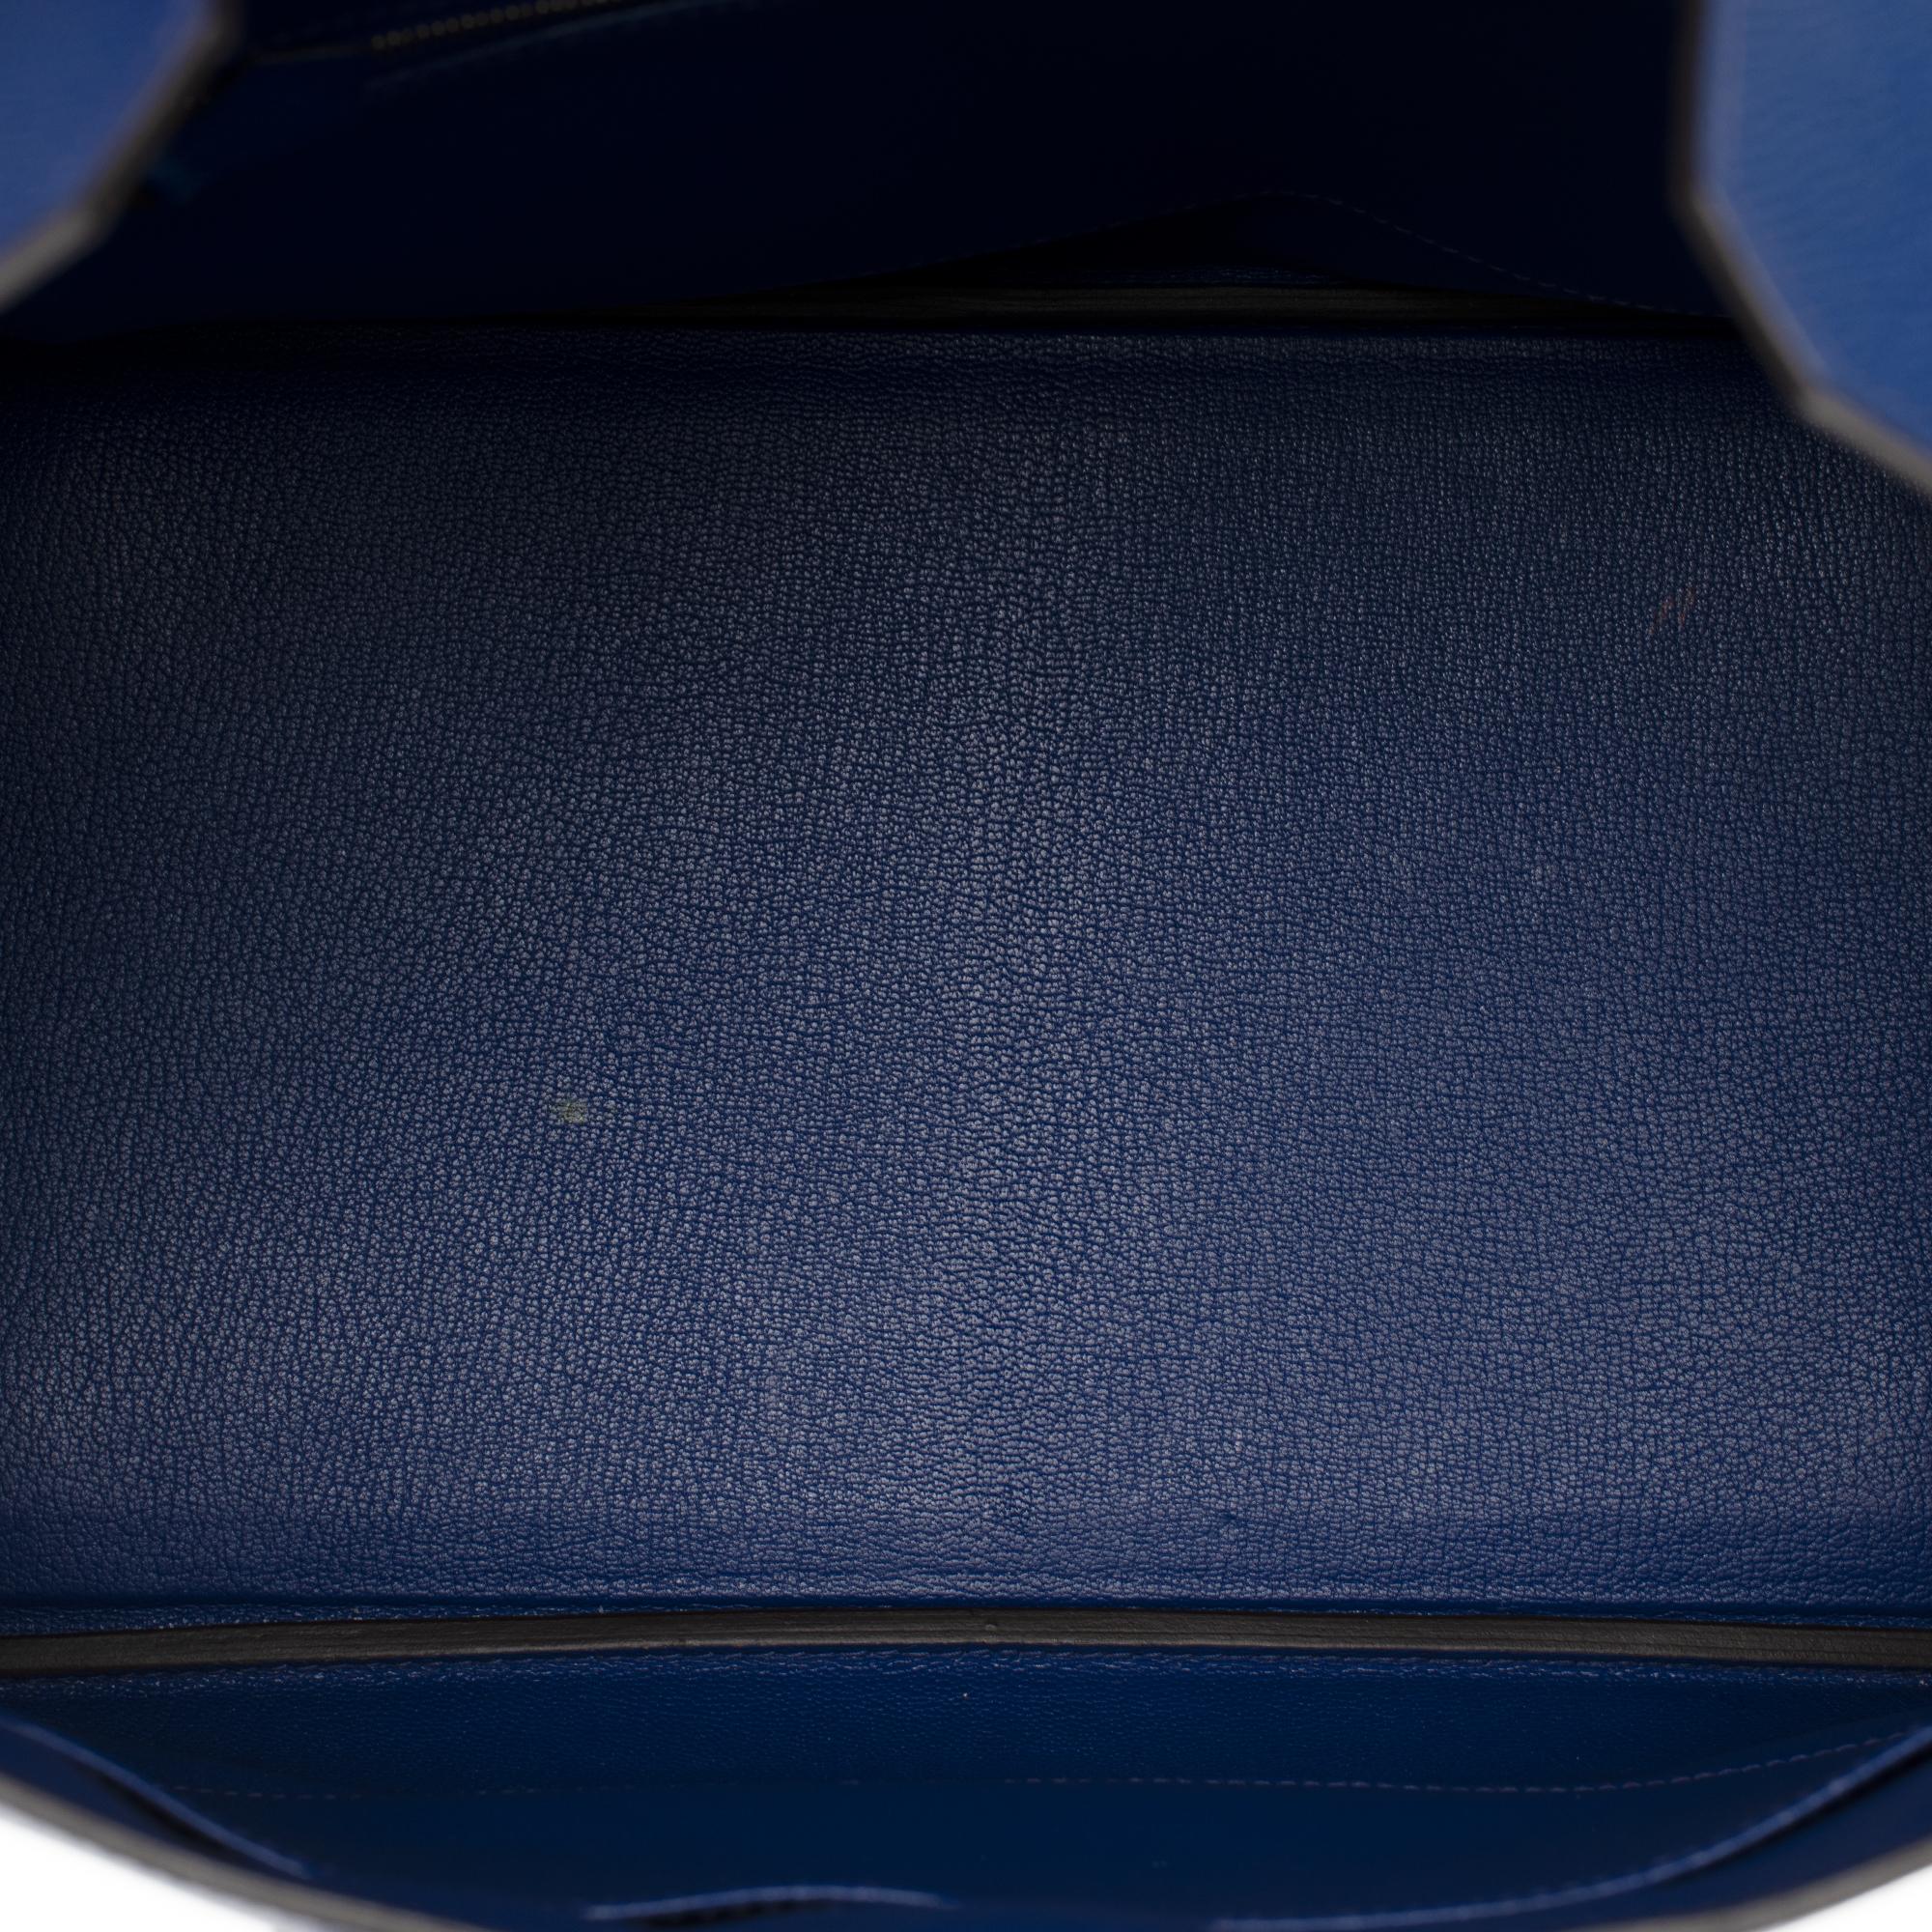 Hermès Birkin 35 handbag in bleu électrique epsom leather, GHW 1